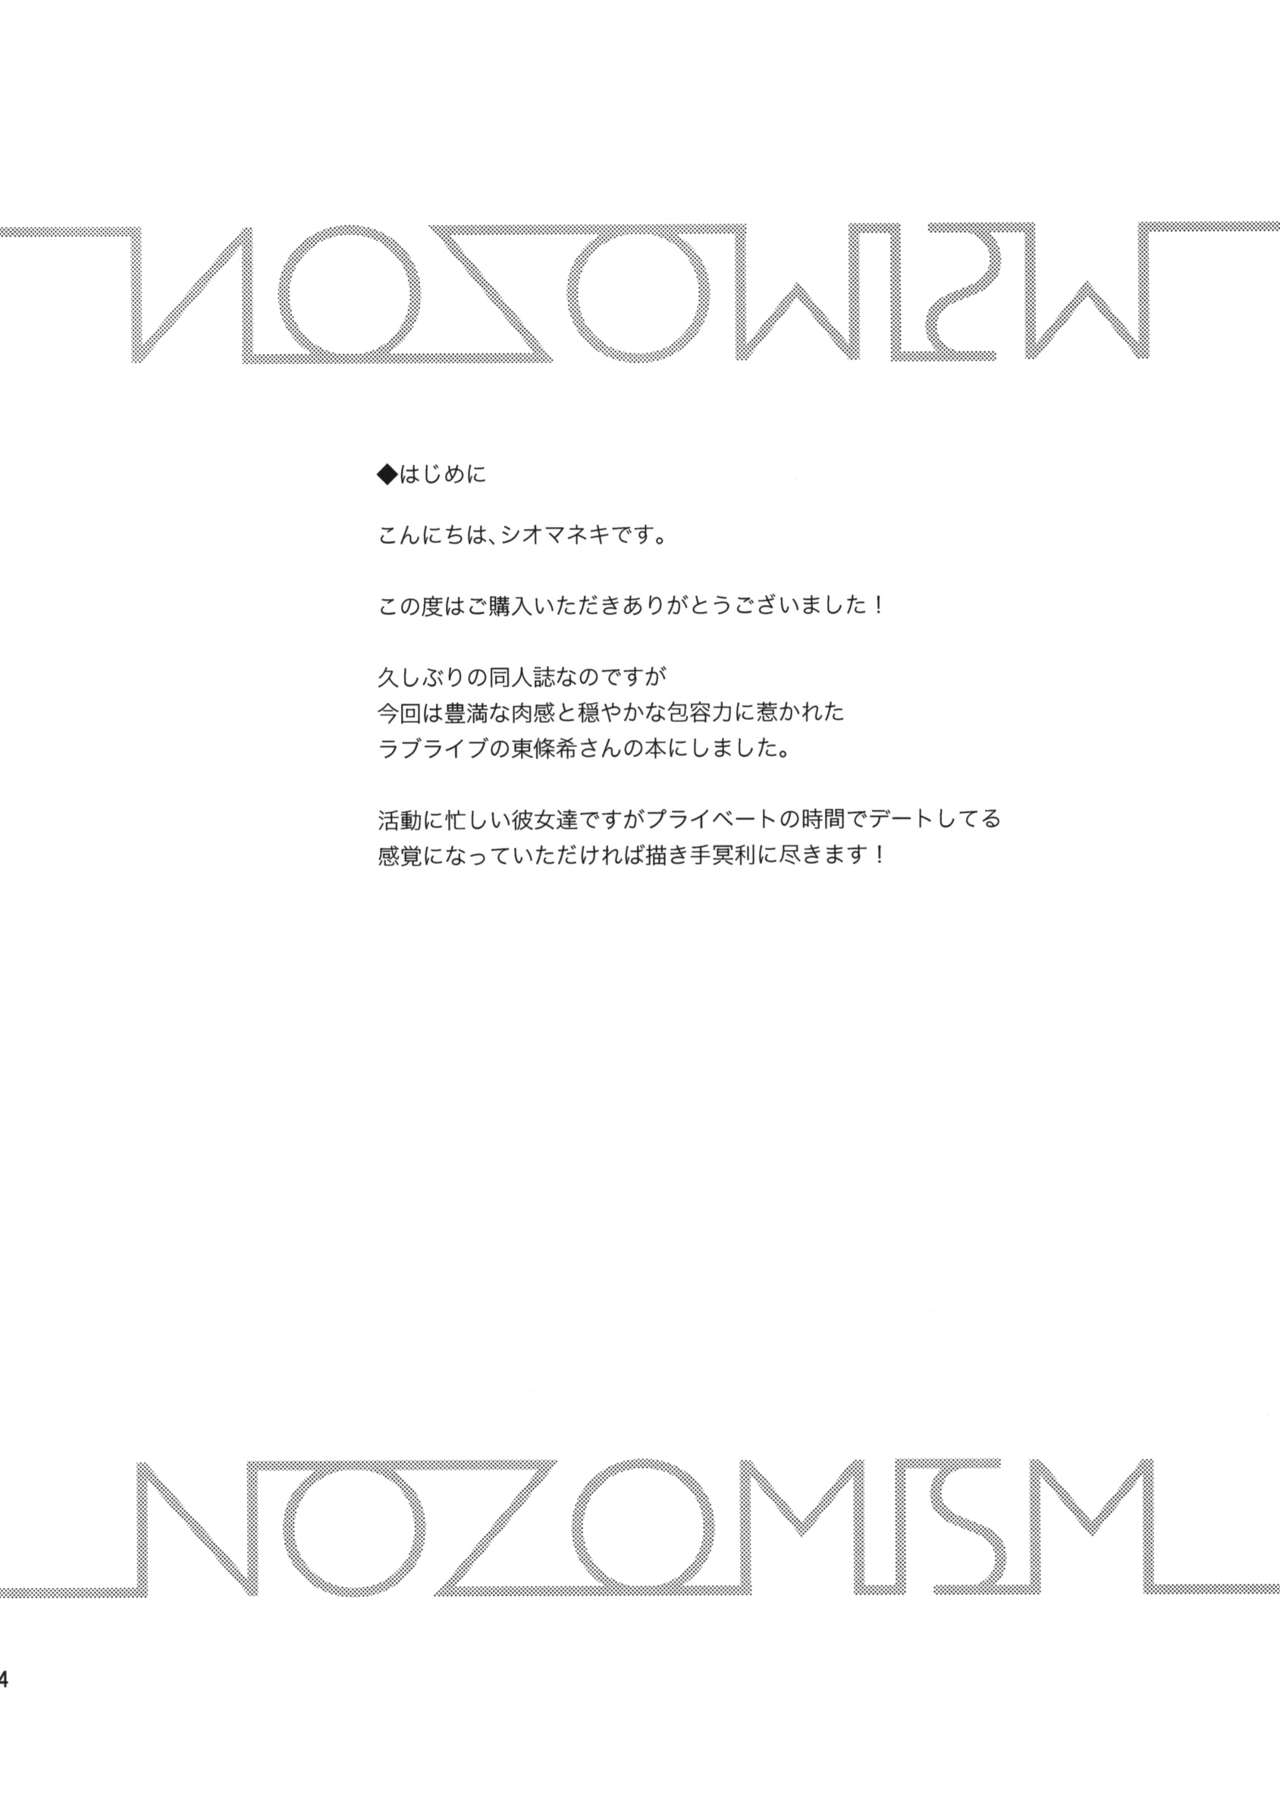 (C88) [殻屋 (シオマネキ)] NOZOMISM (ラブライブ!)